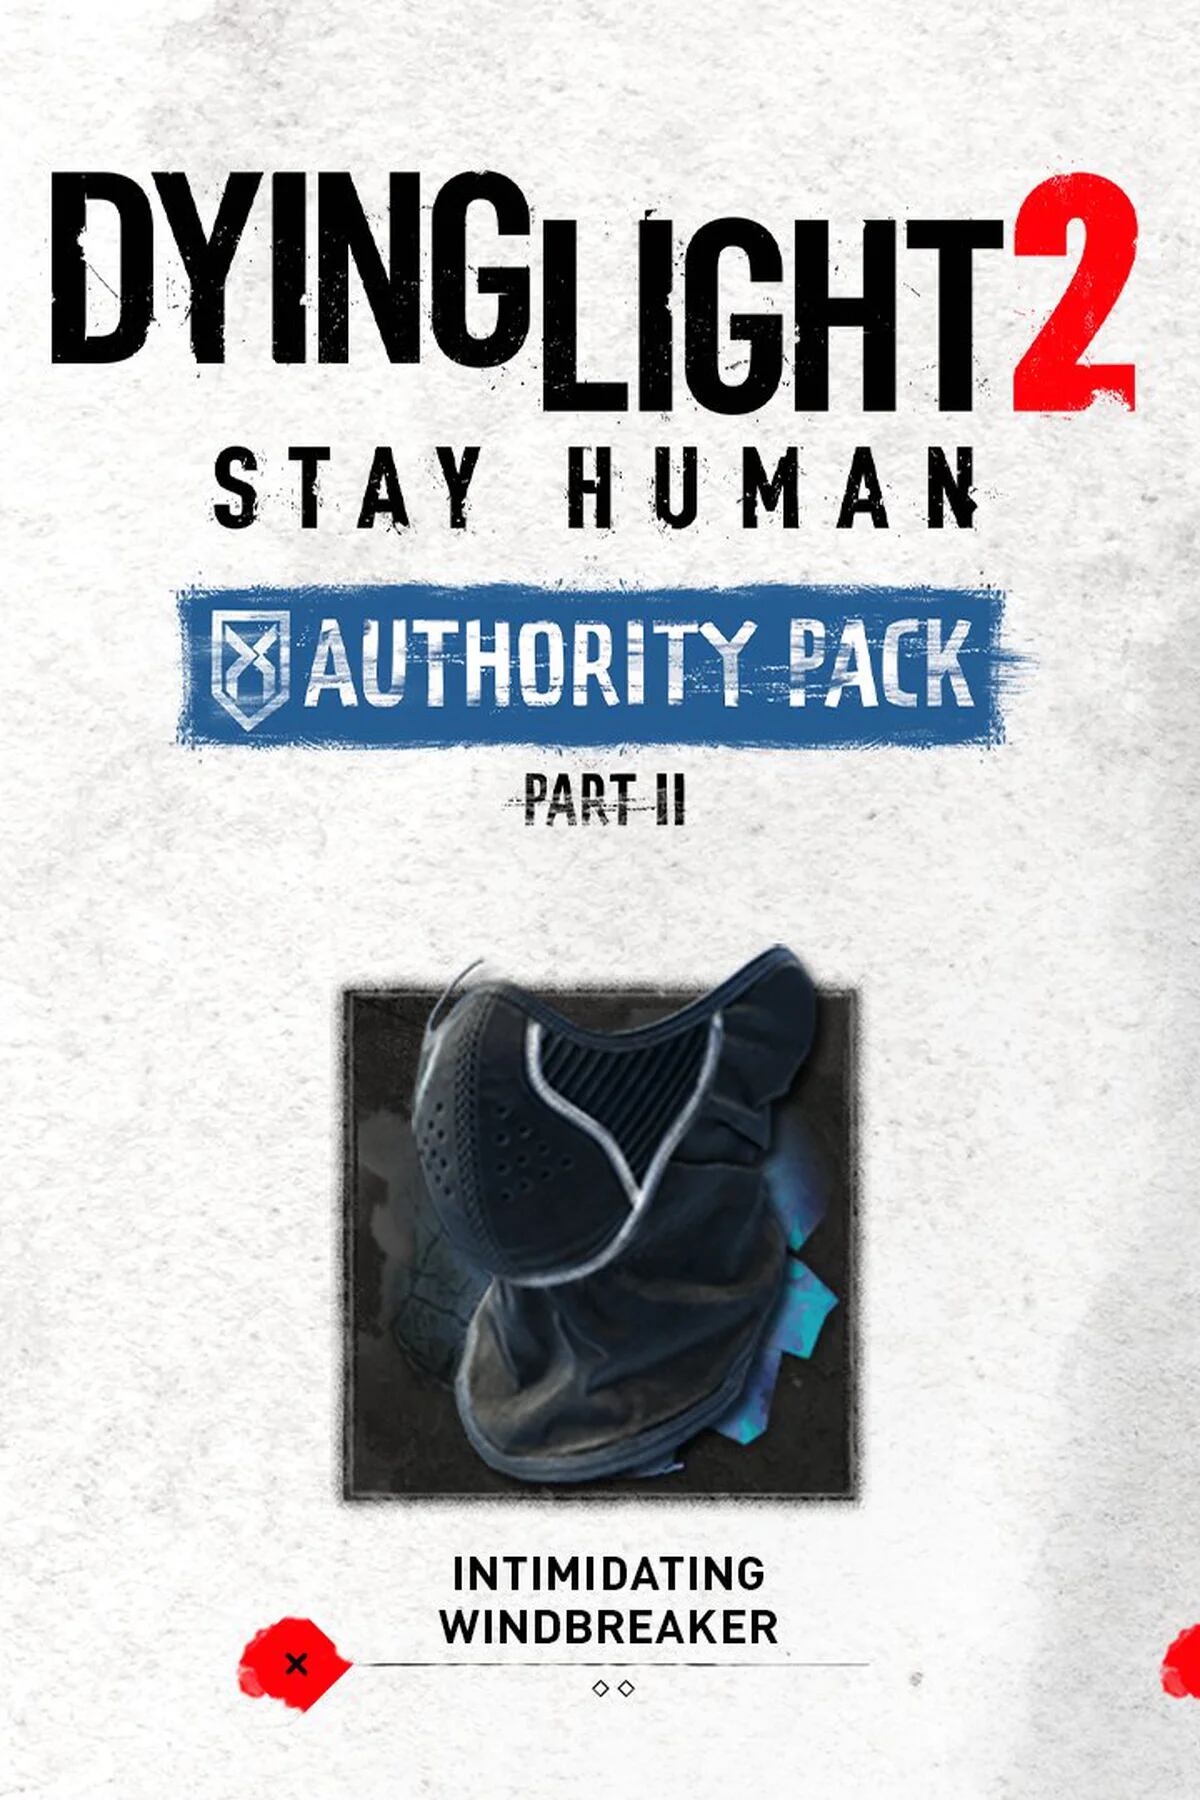 Reservar Dying Light 2 en GAME viene con regalos exclusivos: consigue un  póster y dos DLC gratis